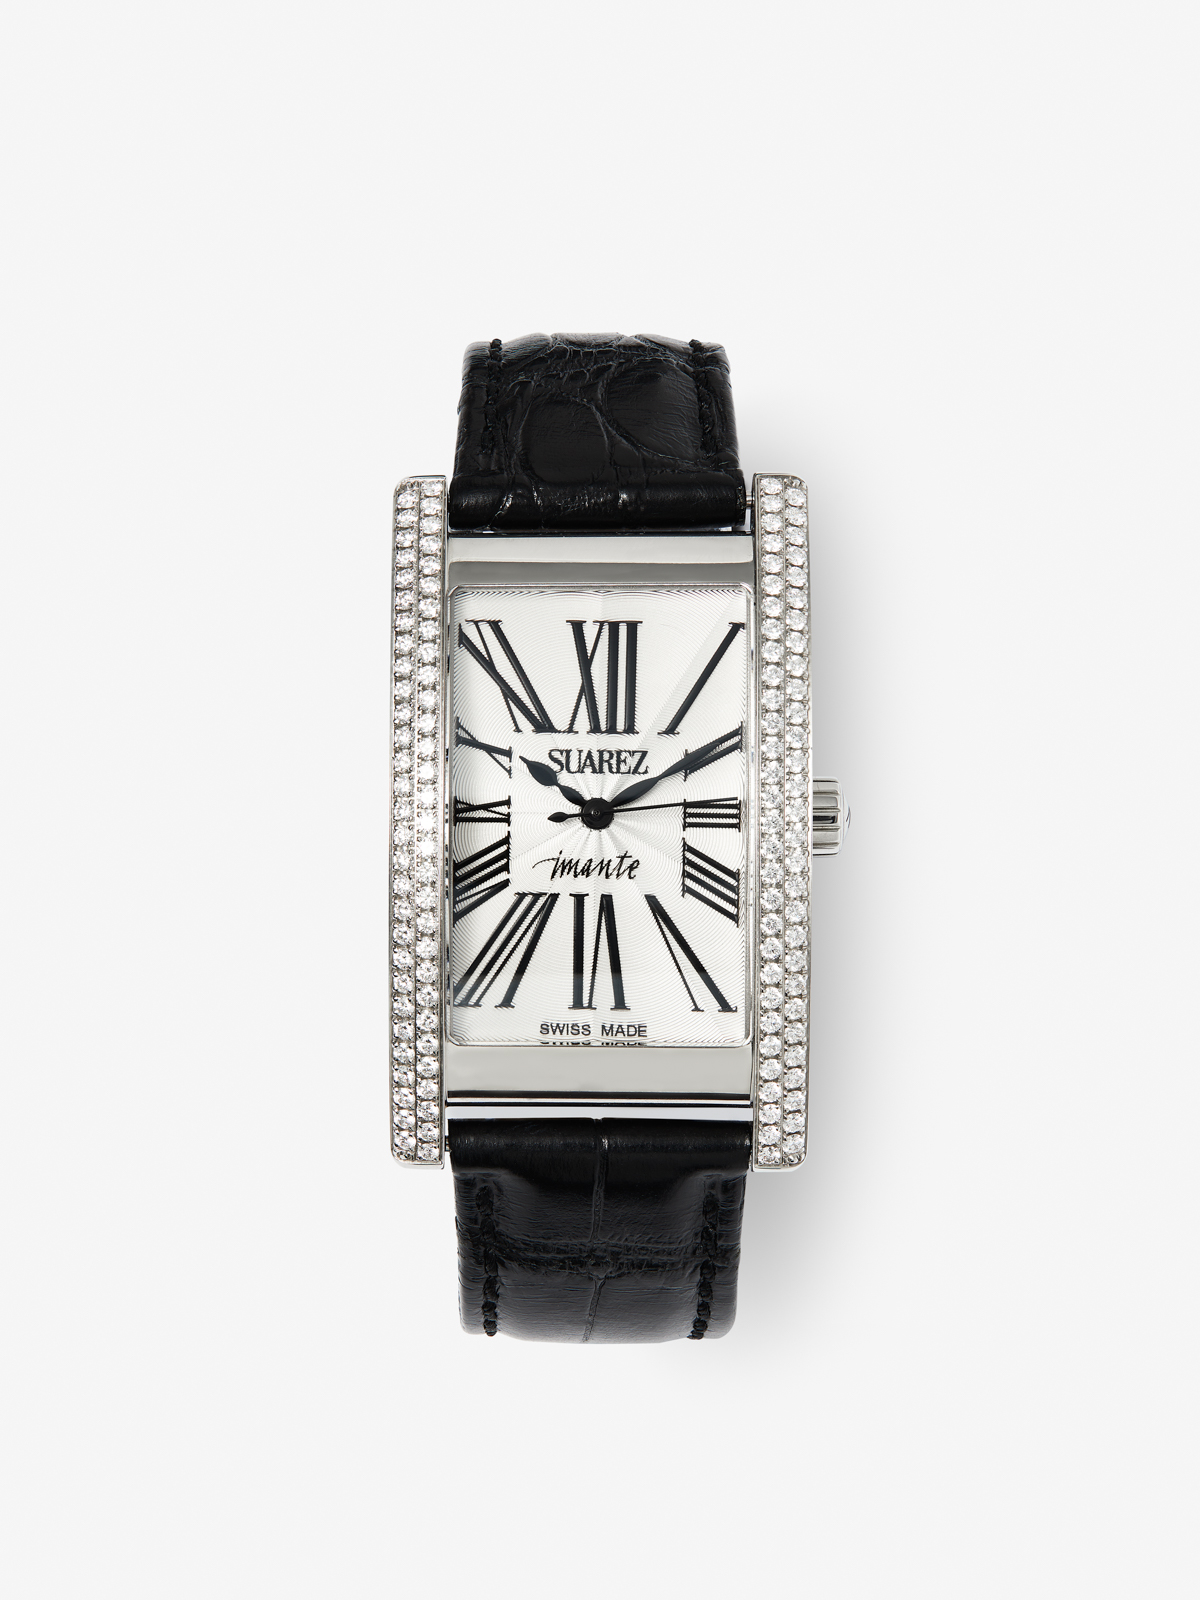 Reloj de acero inoxidable y pulsera de piel, con diamantes blancos en talla brillante, cristal de zafiro y movimiento de cuarzo